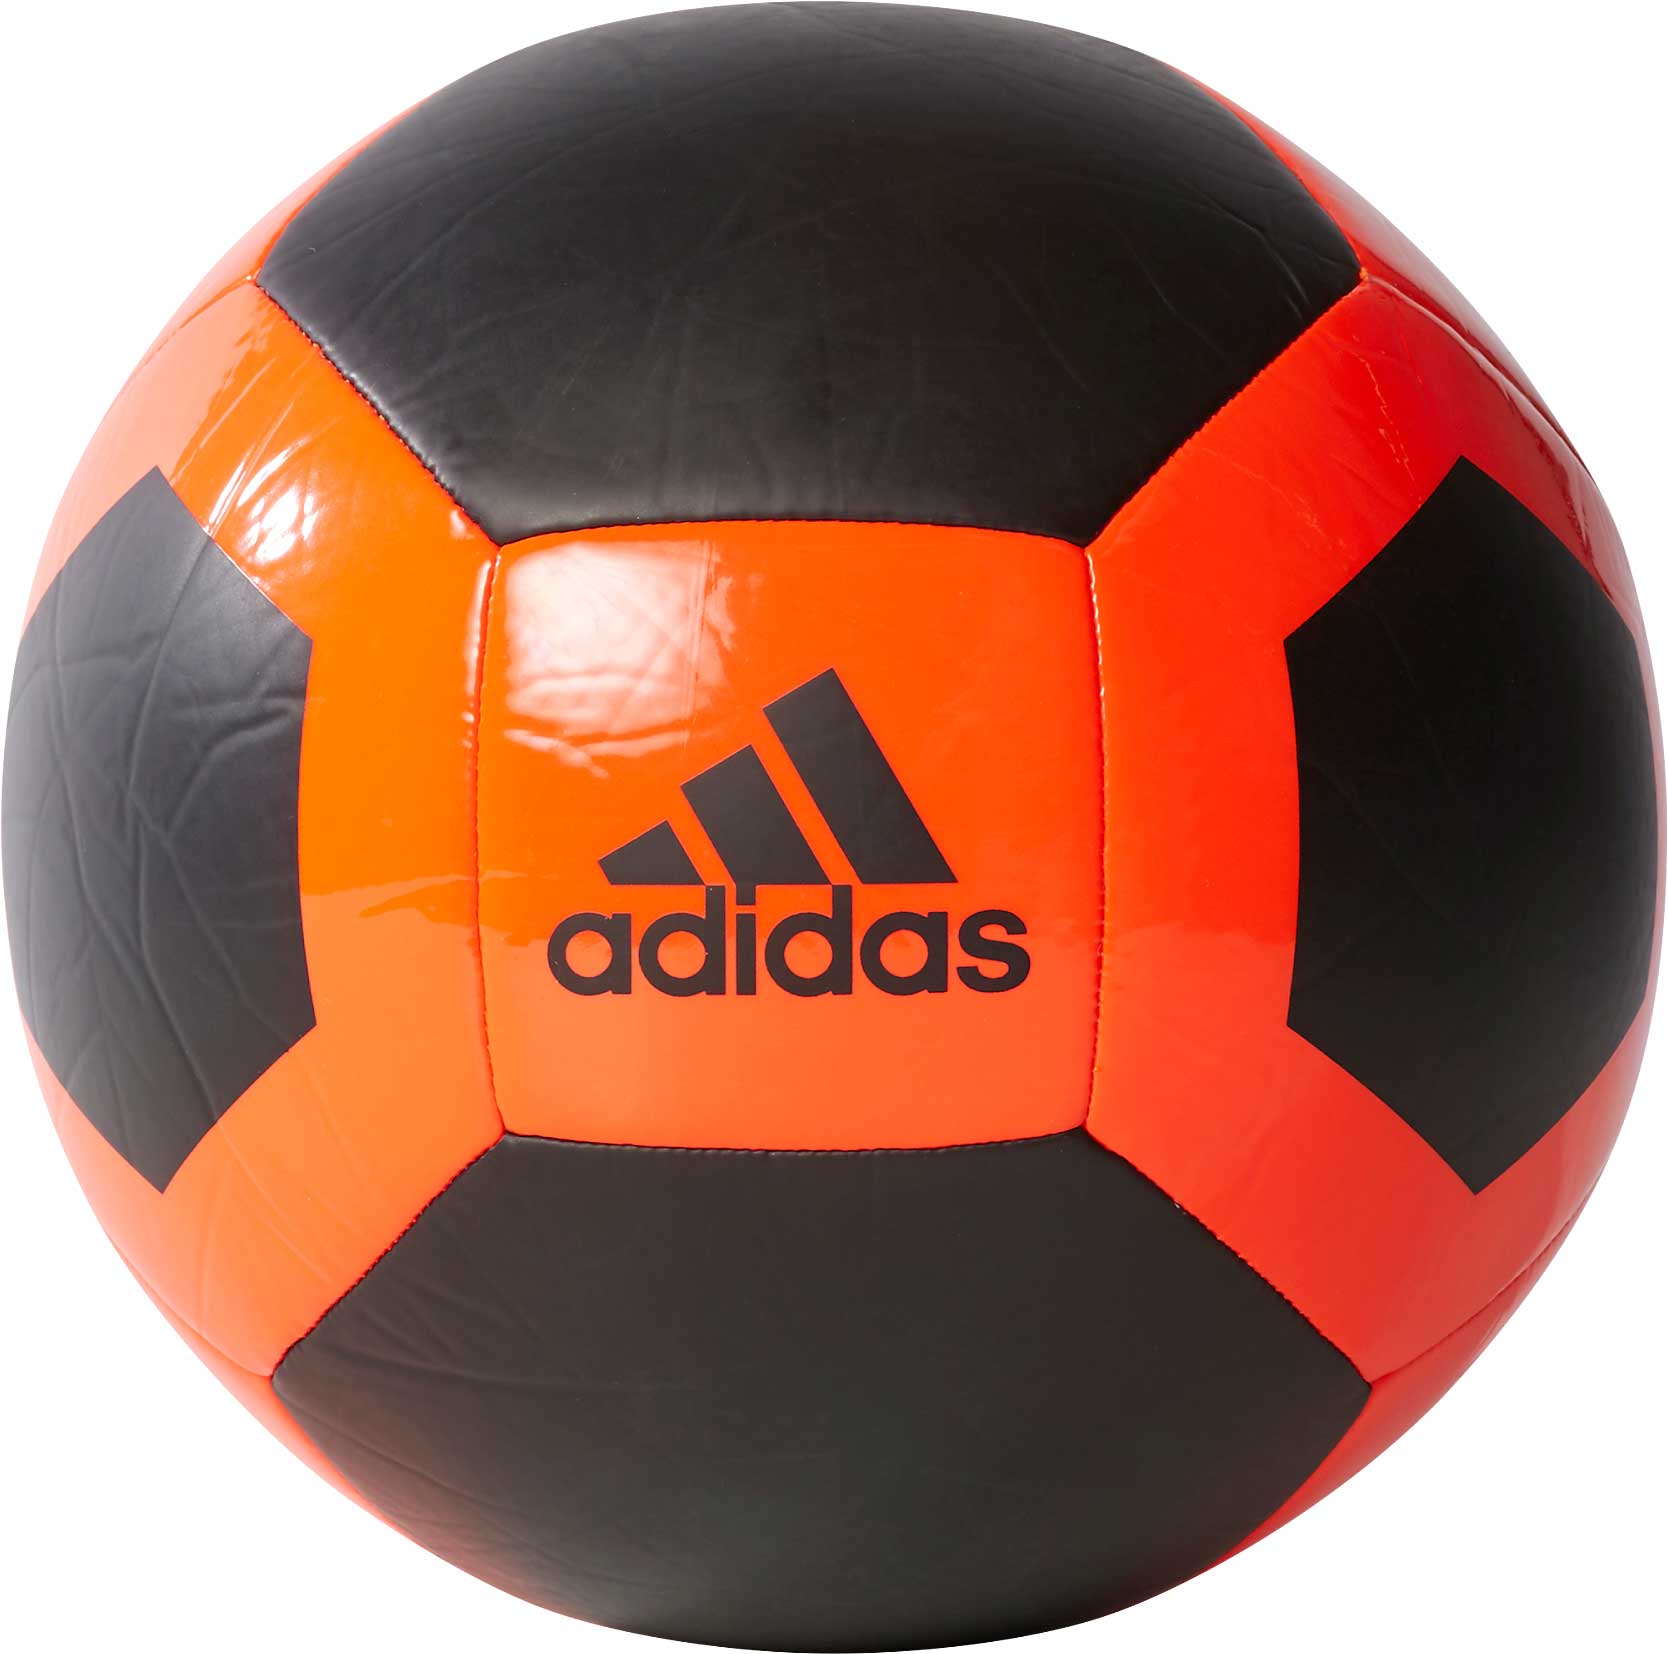 adidas indoor soccer ball